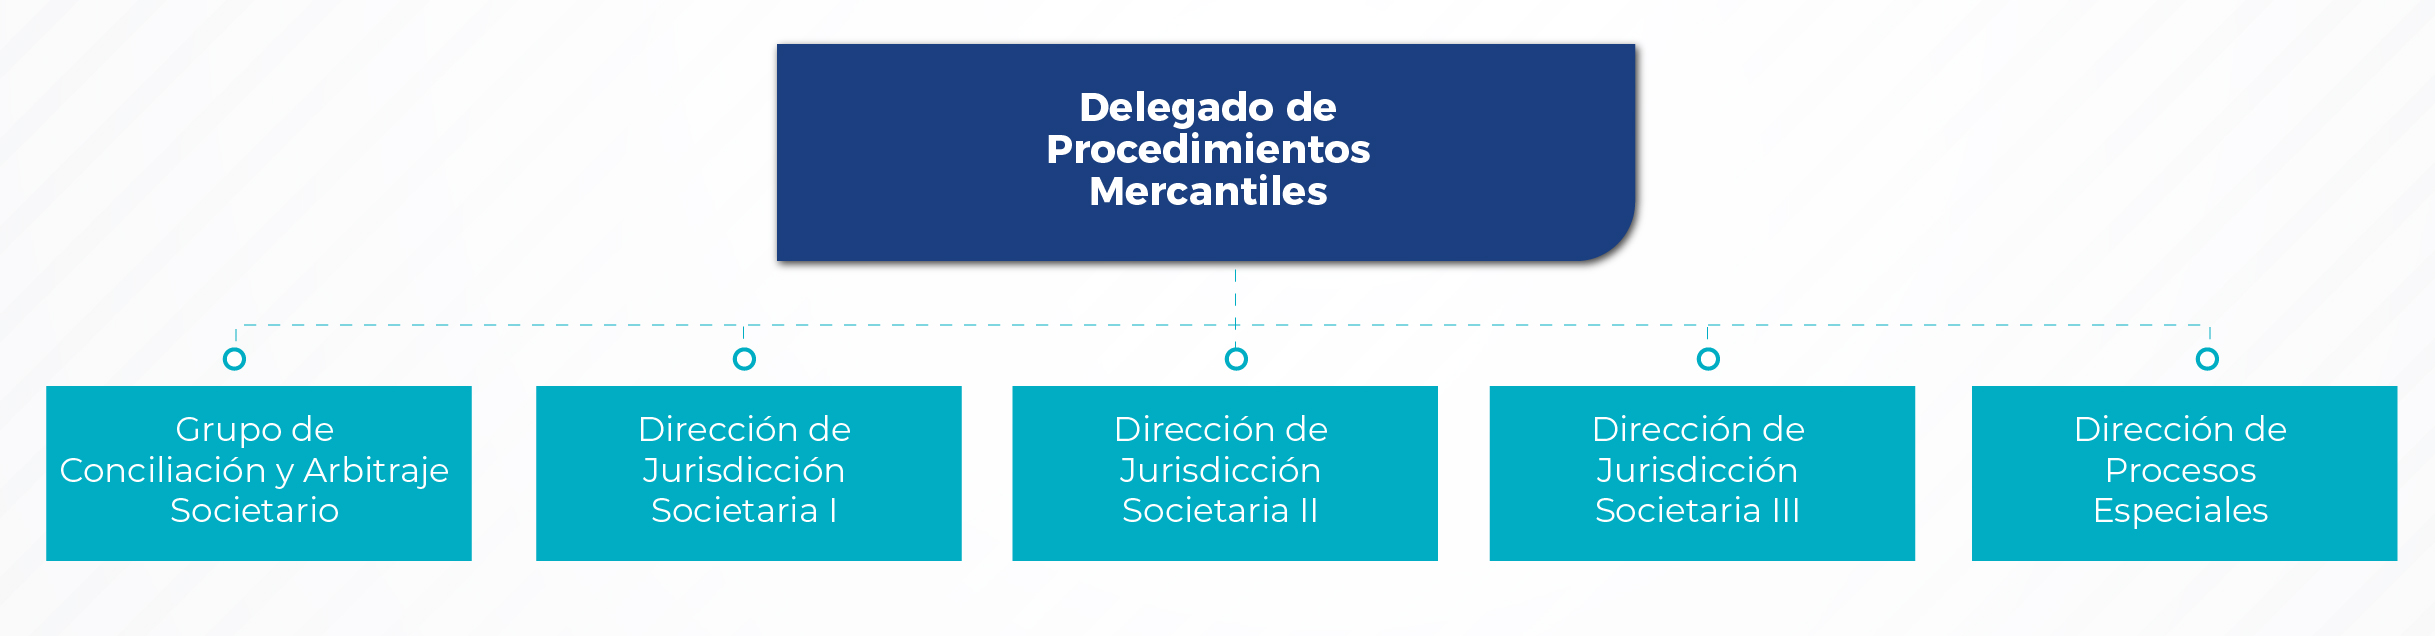 Estructura delegatura mercantil